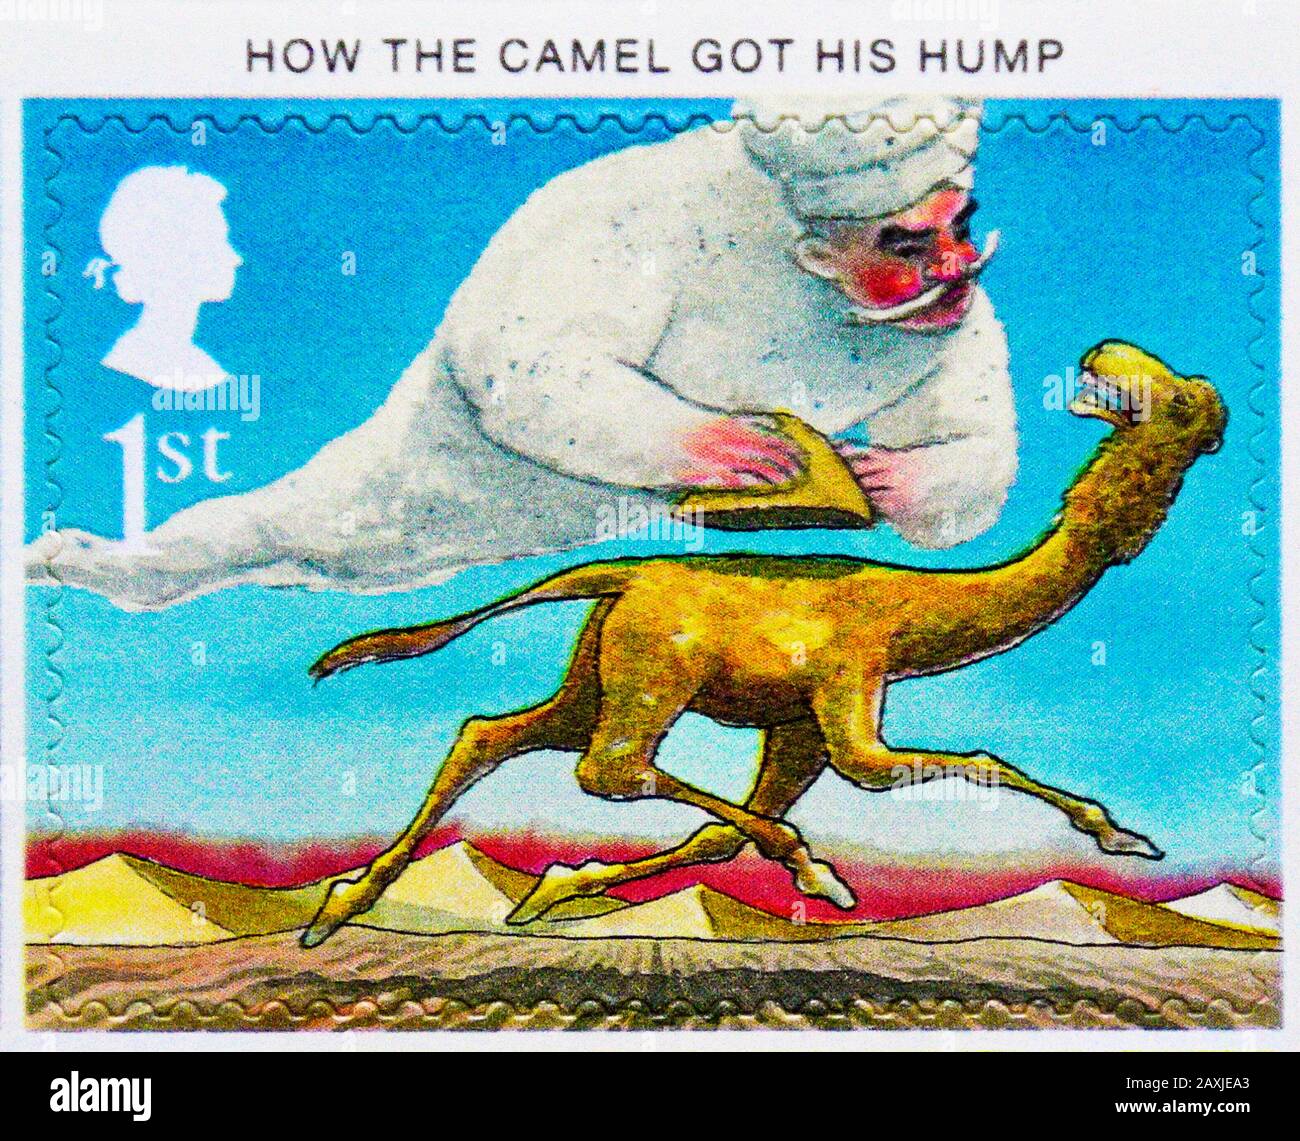 Briefmarke. Großbritannien. Königin Elizabeth II Das hundertjährige Jubiläum der Veröffentlichung von "Just So Stories" von Rudyard Kipling. "Wie der Camel seinen Hump bekommen hat". 1. Stockfoto